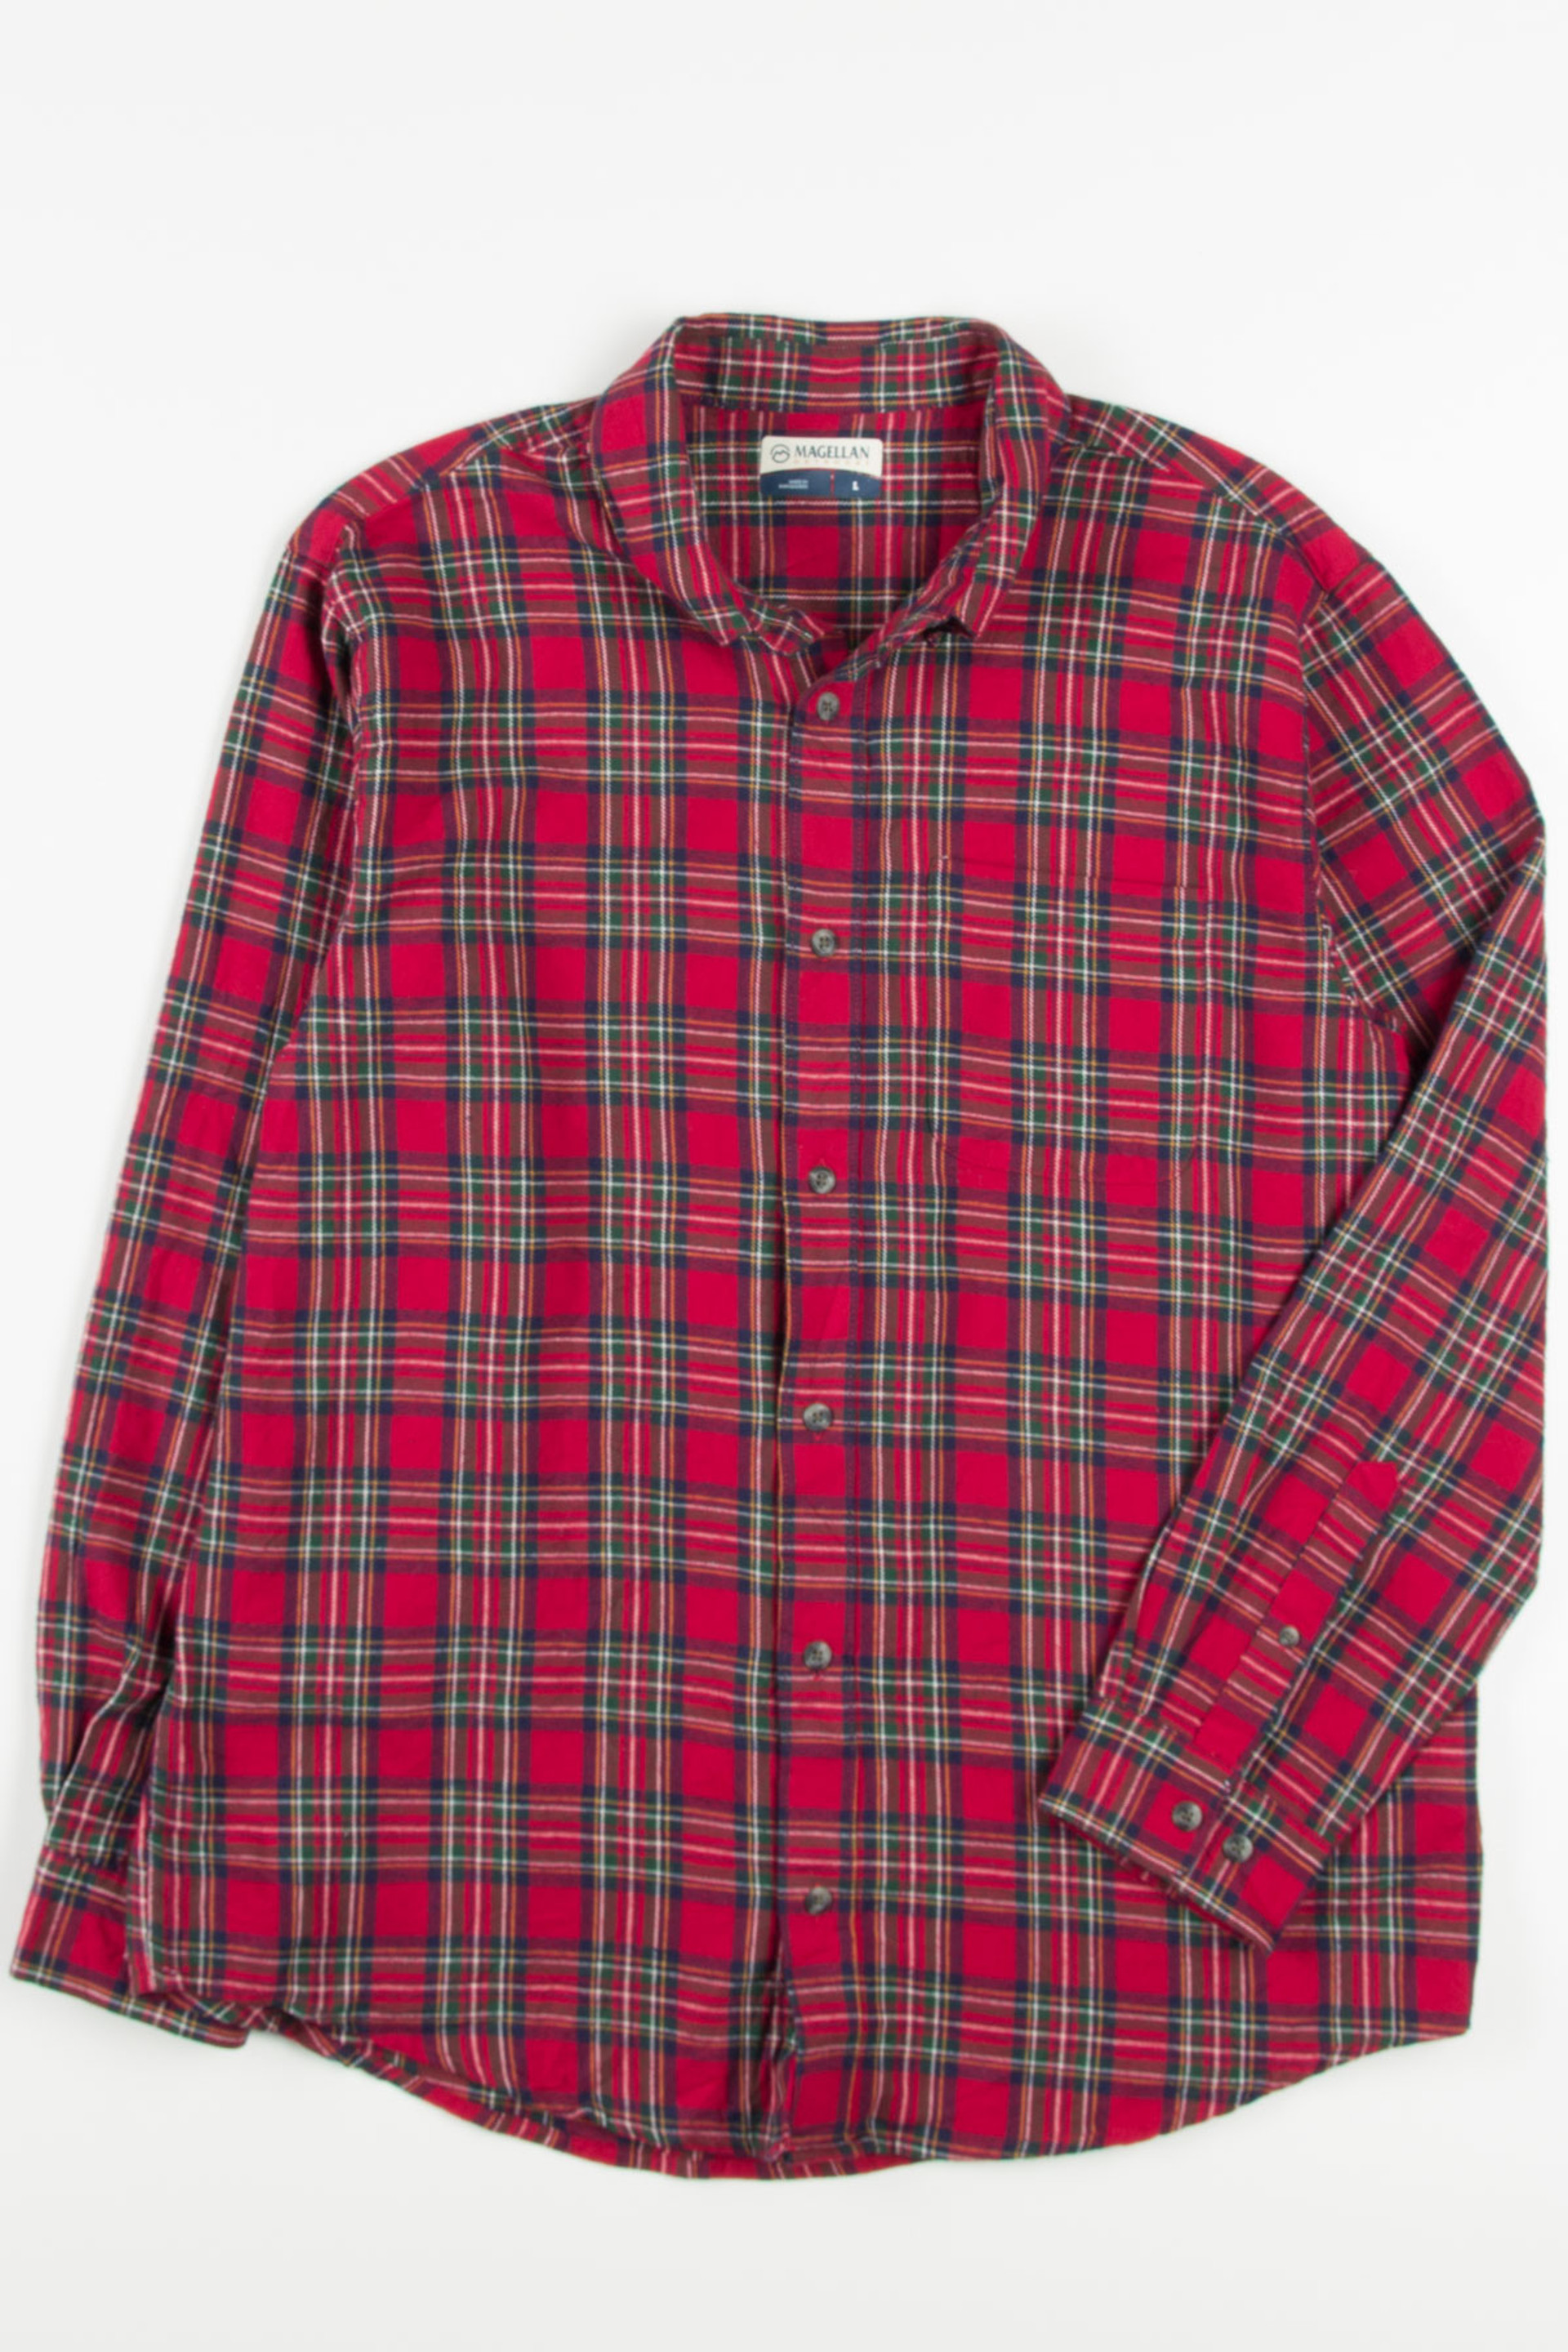 Magellan Outdoors Flannel Shirt - Ragstock.com